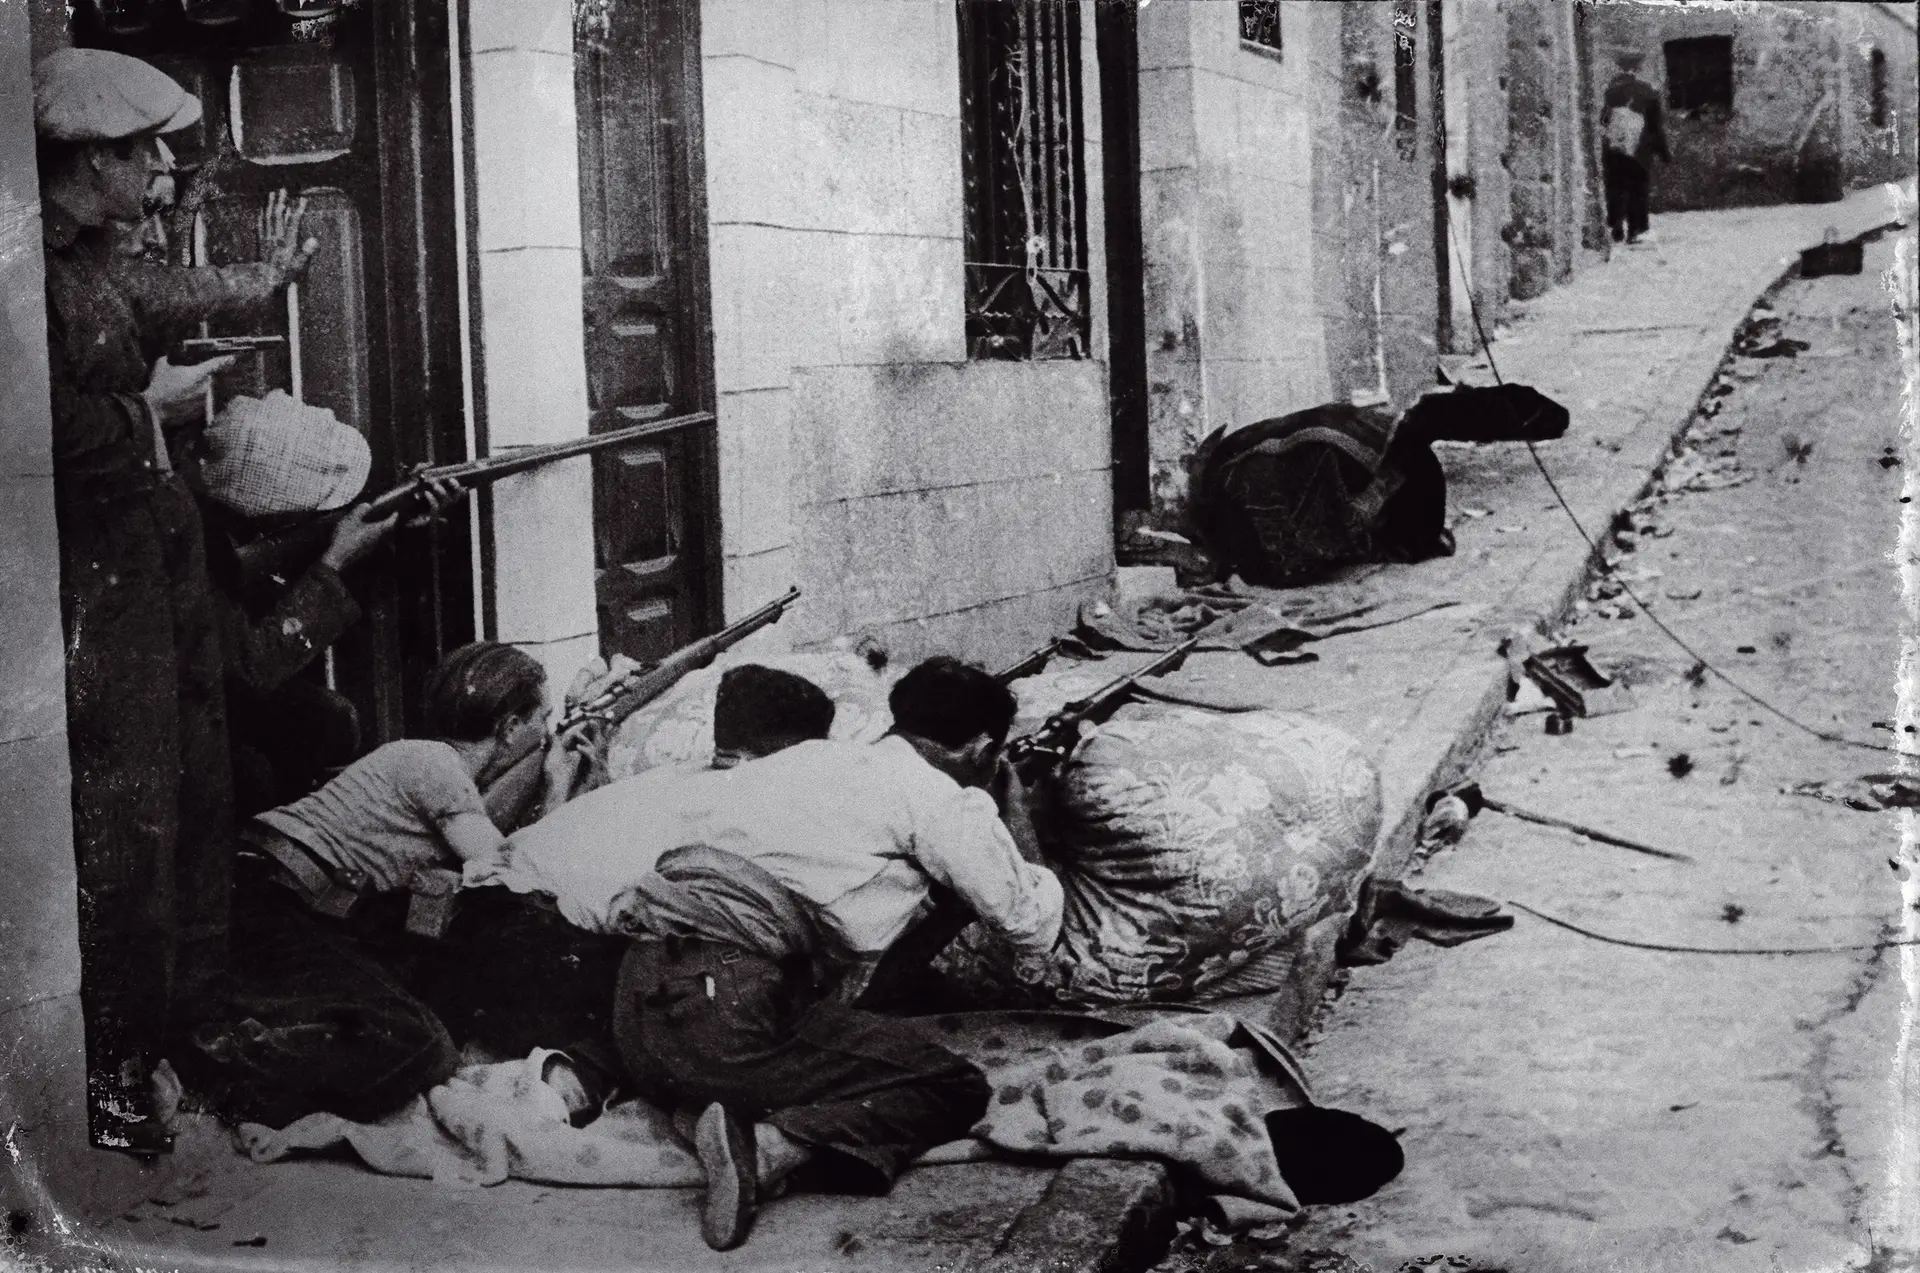 Fotografia de republicanos armados numa aldeia não identificada durante a Guerra Civil de Espanha, no final da década de 30